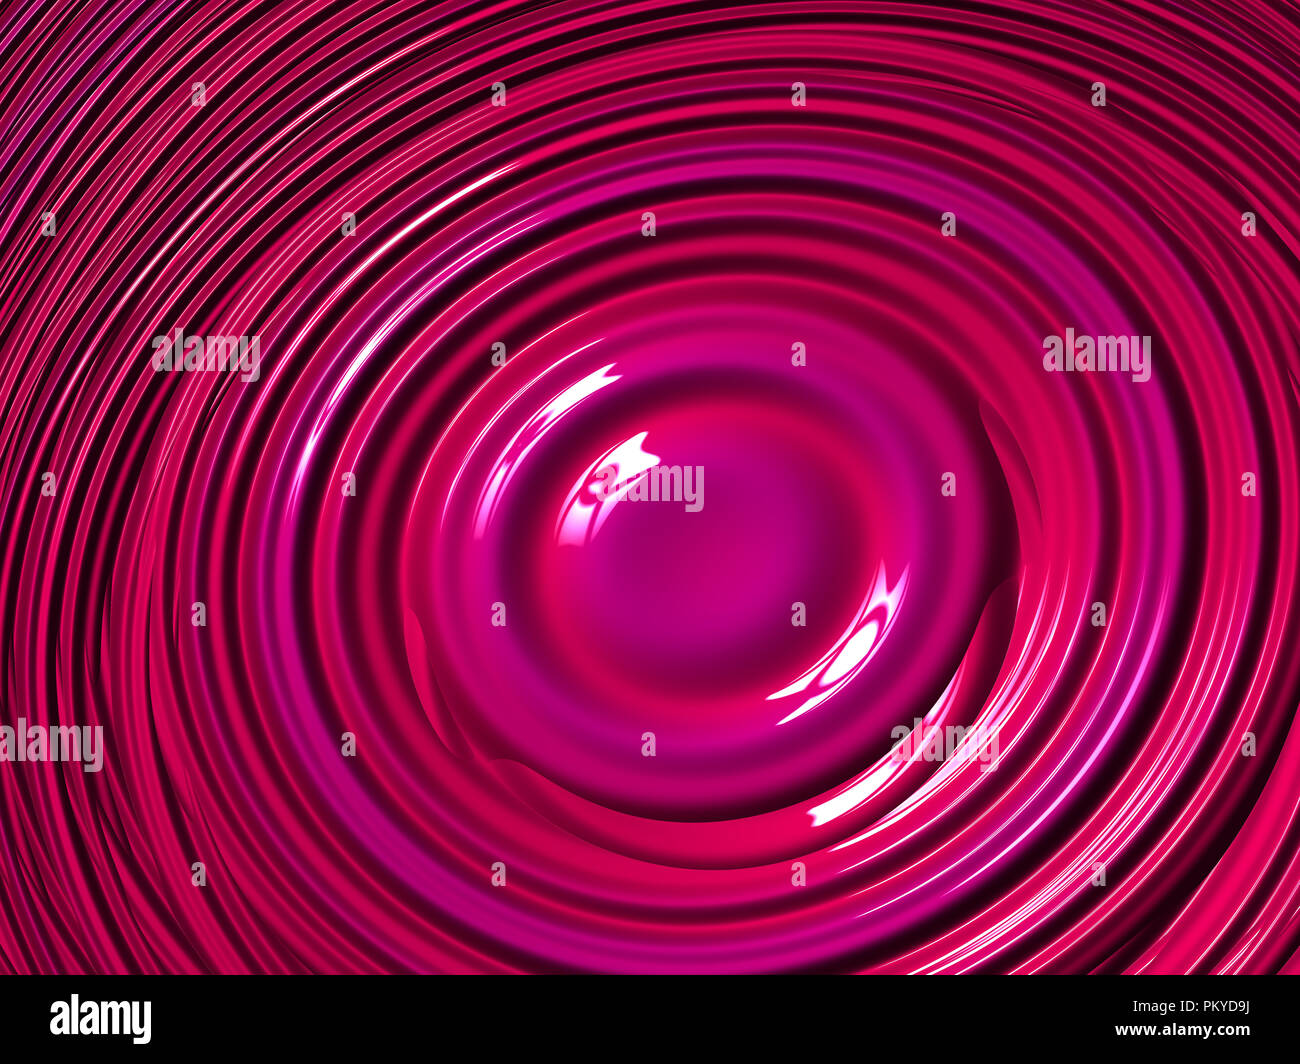 Schöne rosa digitale Fraktal Bild mit Wirkung von kreisförmigen Wellen in glänzendem Lack Stockfoto